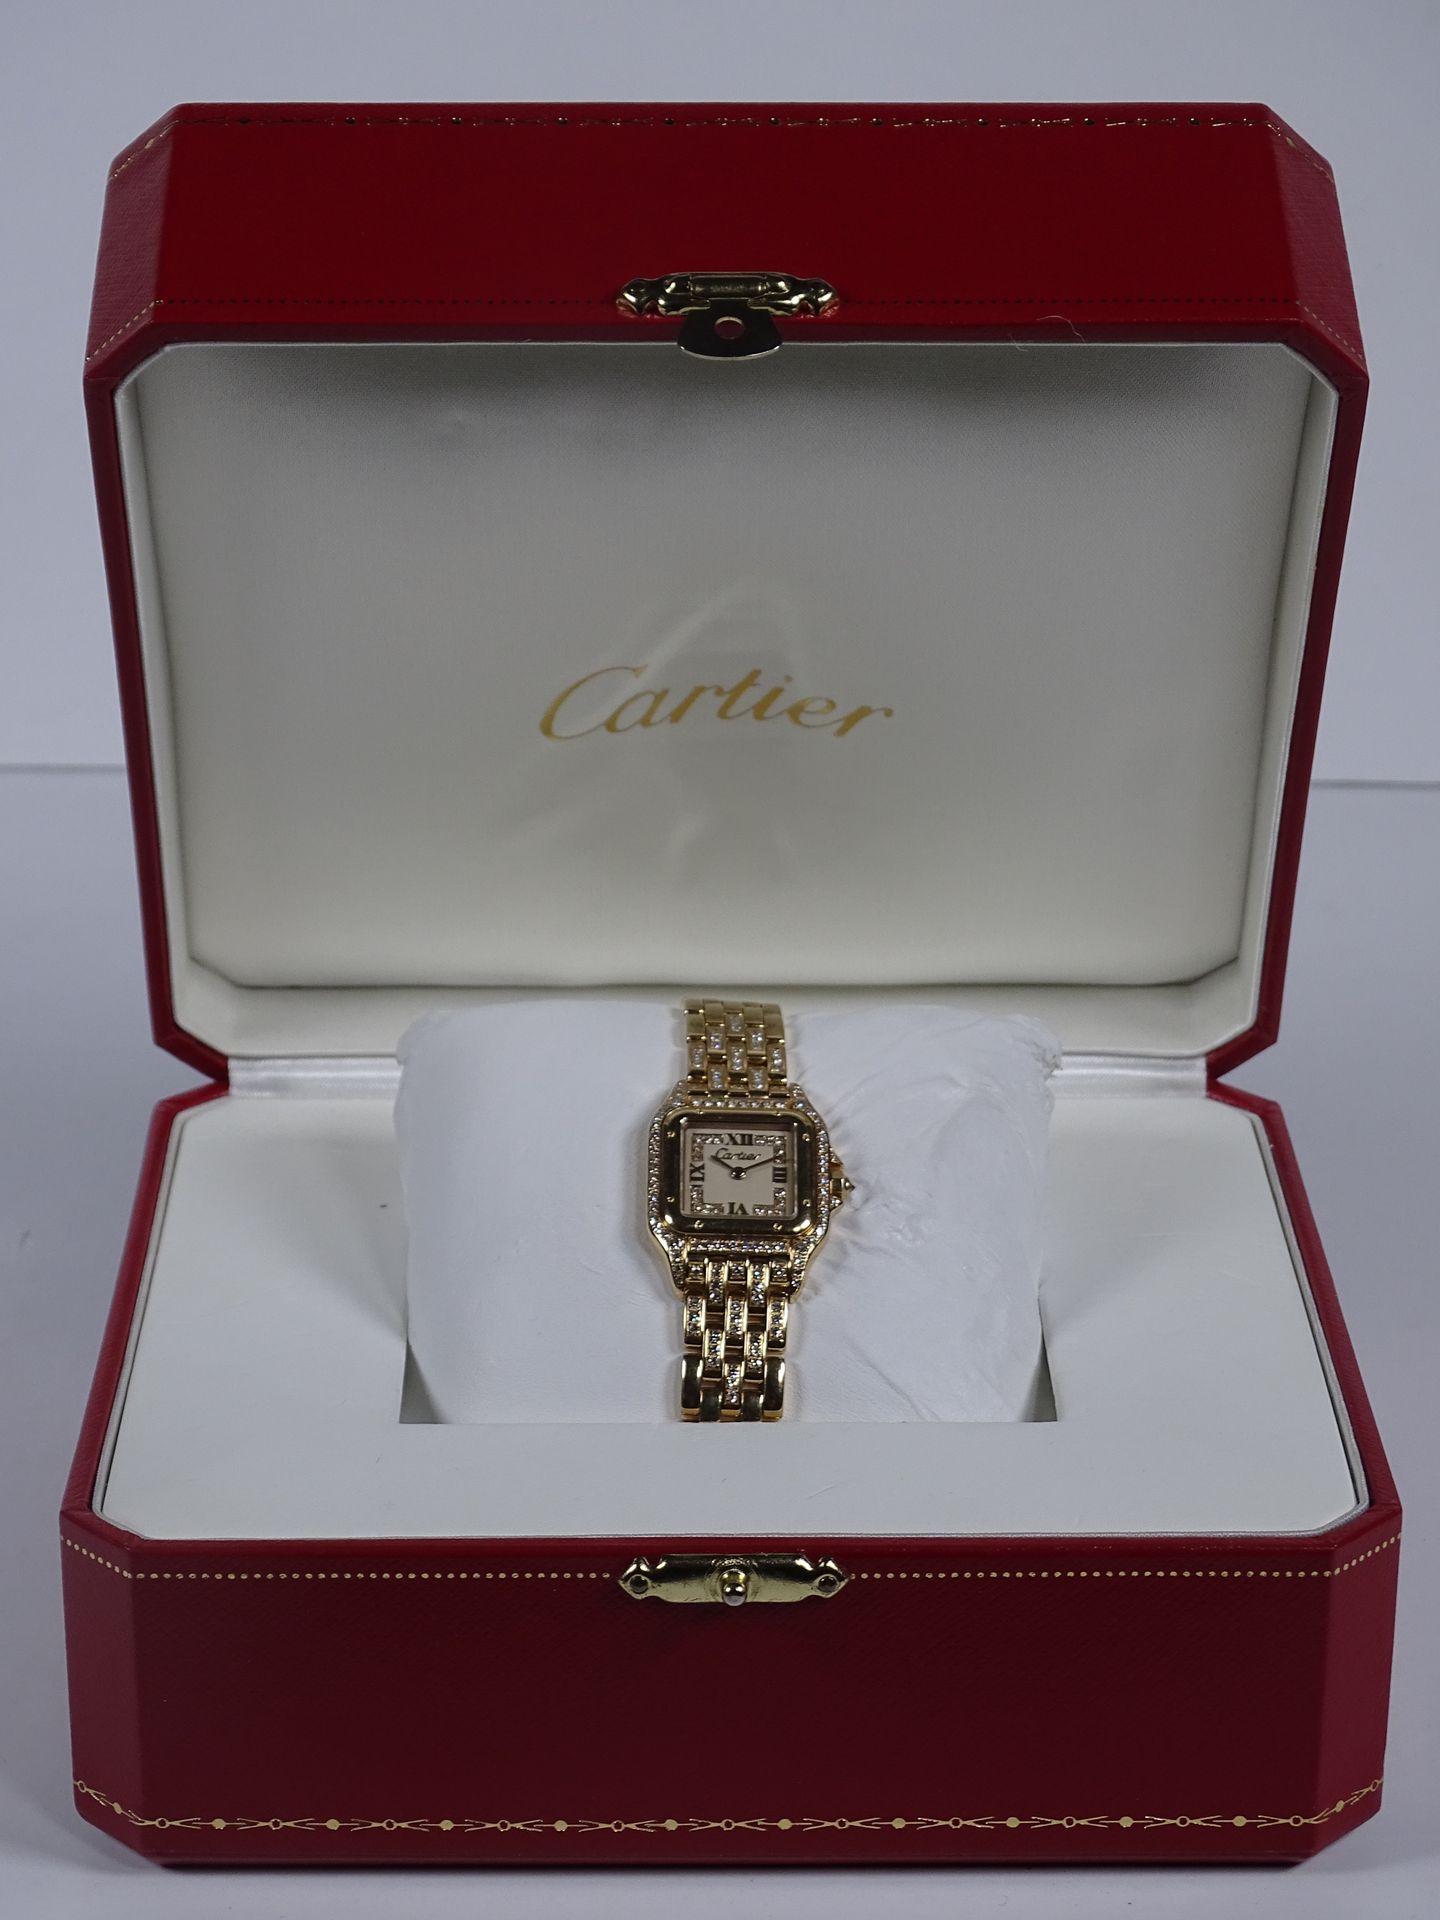 CARTIER Montre bracelet de dame en or.

Modèle Panthère de la Maison Cartier.

L&hellip;